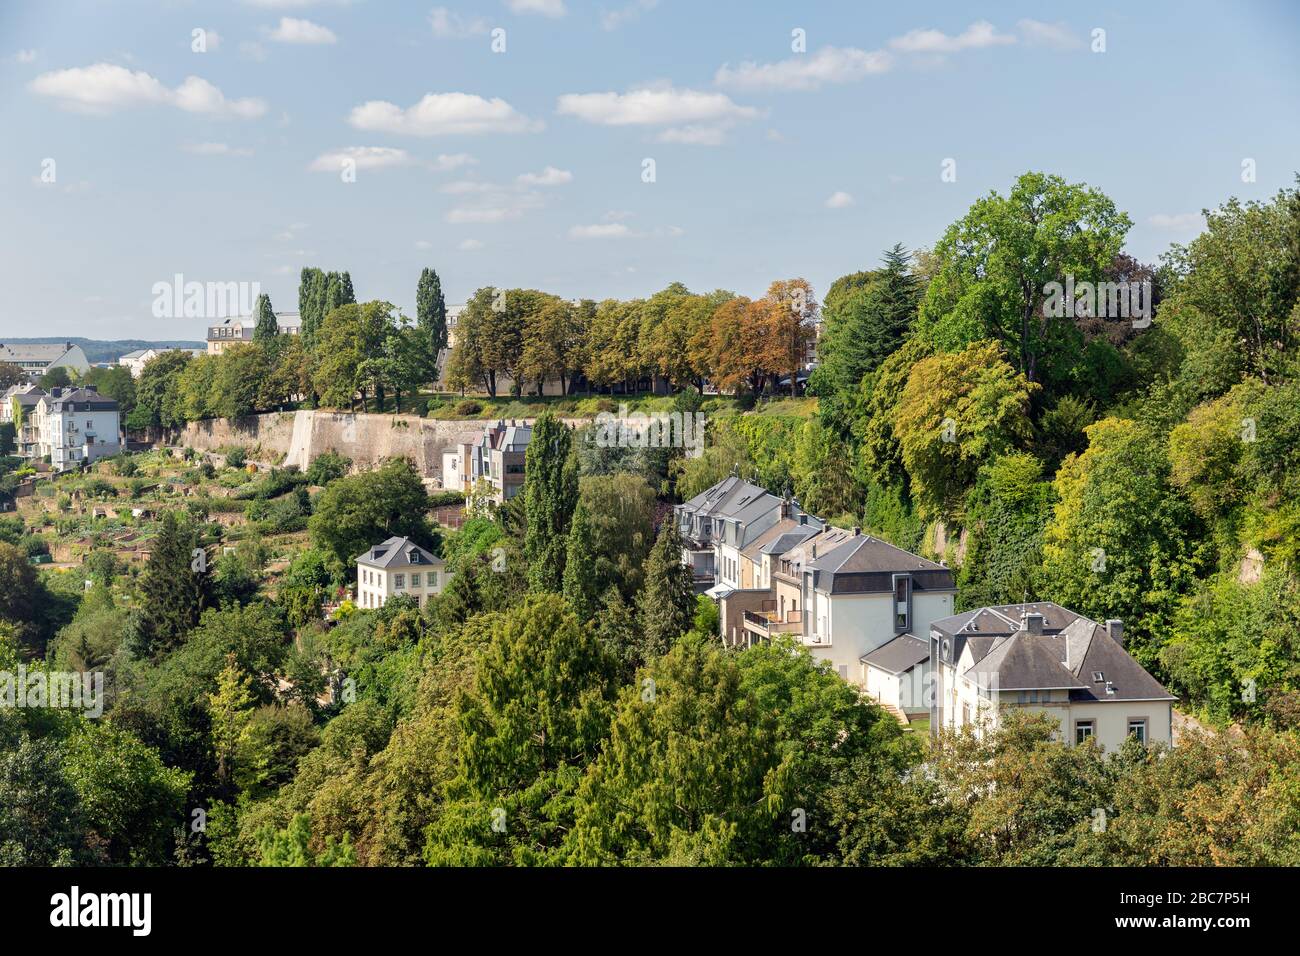 Maisons dans le parc paysage naer Kirchberg dans la ville de Luxembourg Banque D'Images